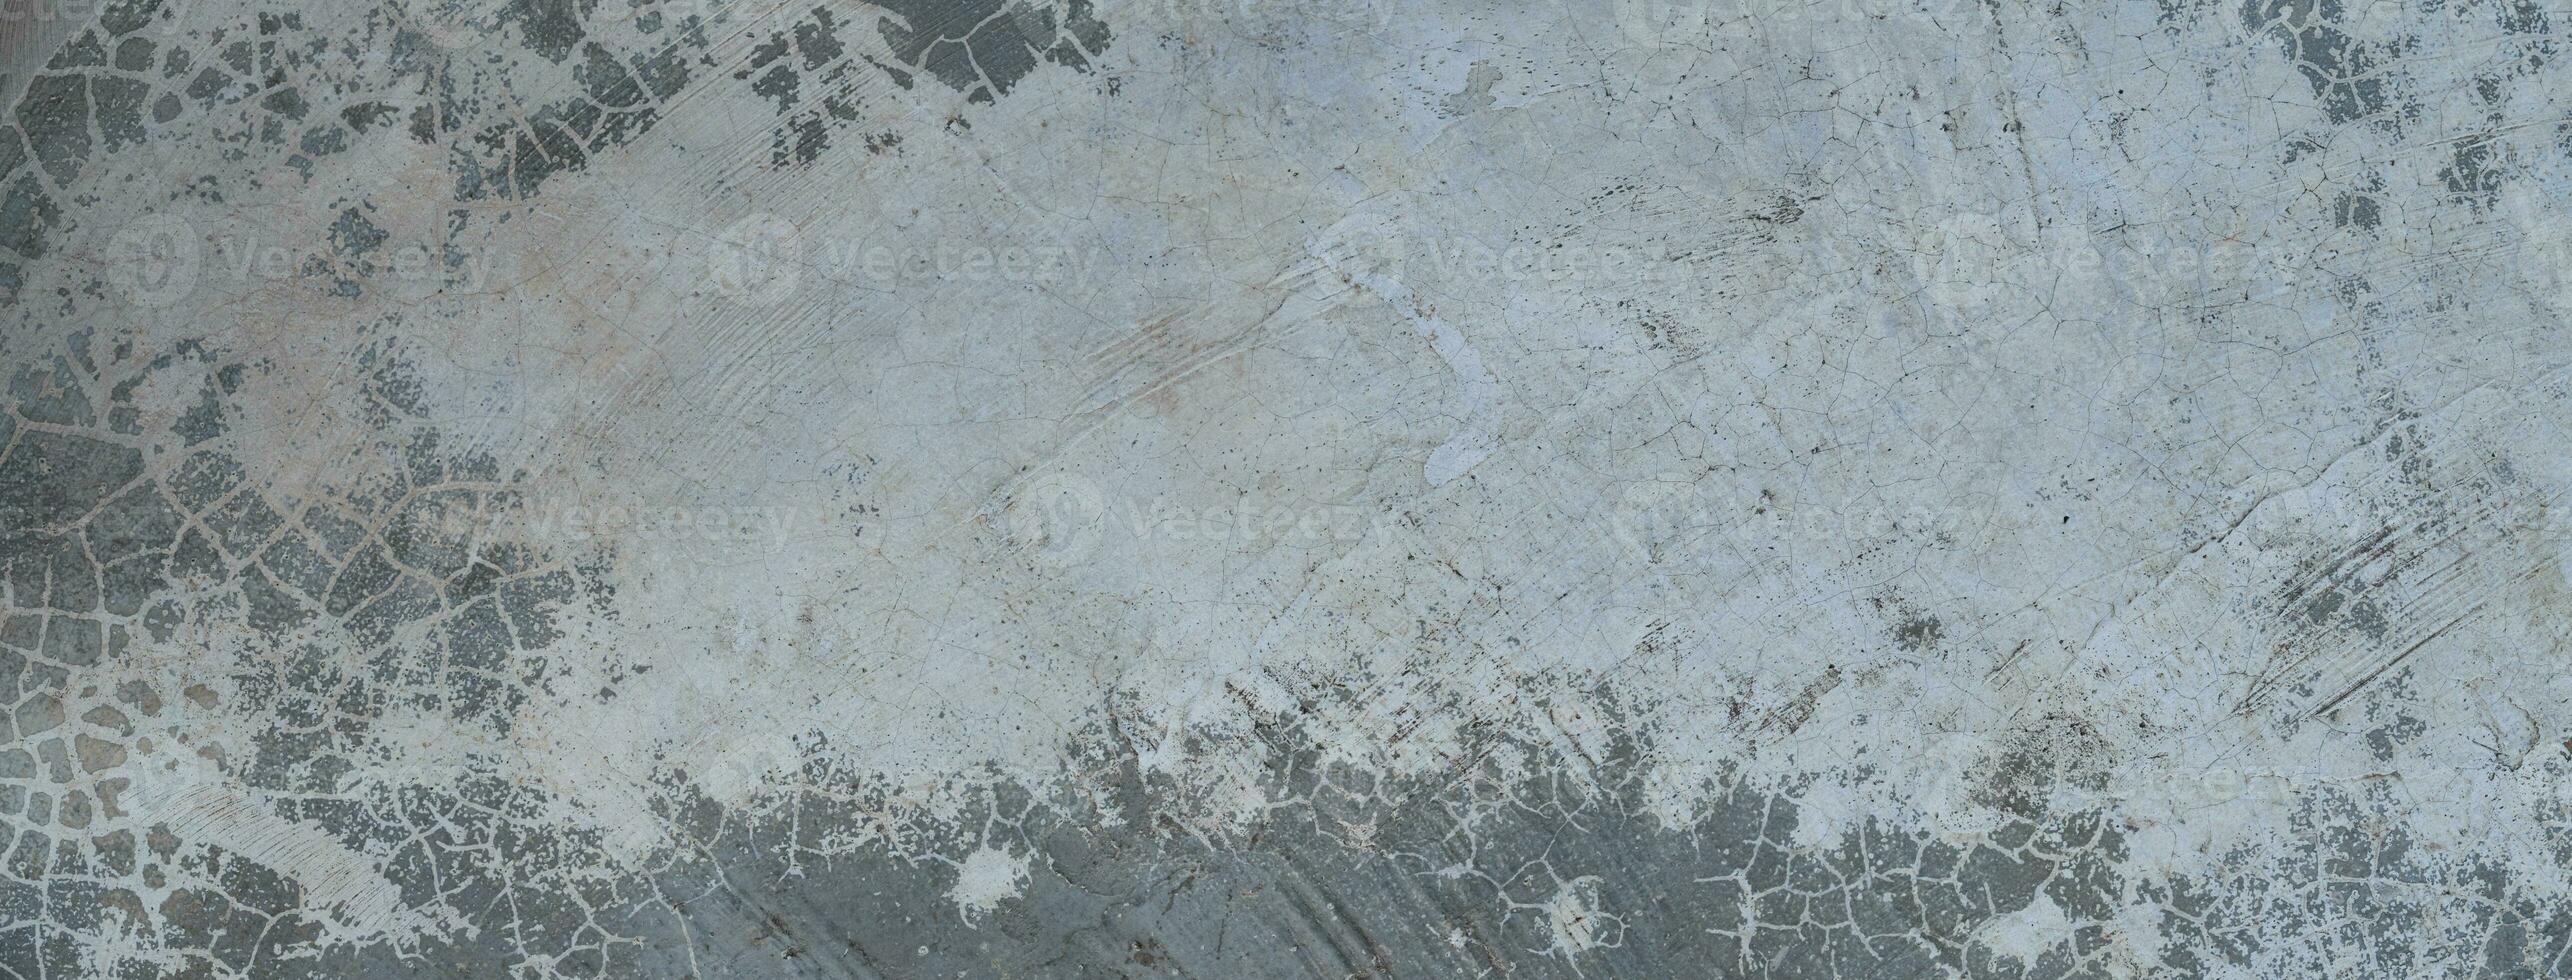 mur béton vieux texture. ciment gris et blanc ancien fond d'écran. Contexte sale abstrait grunge pour conception photo